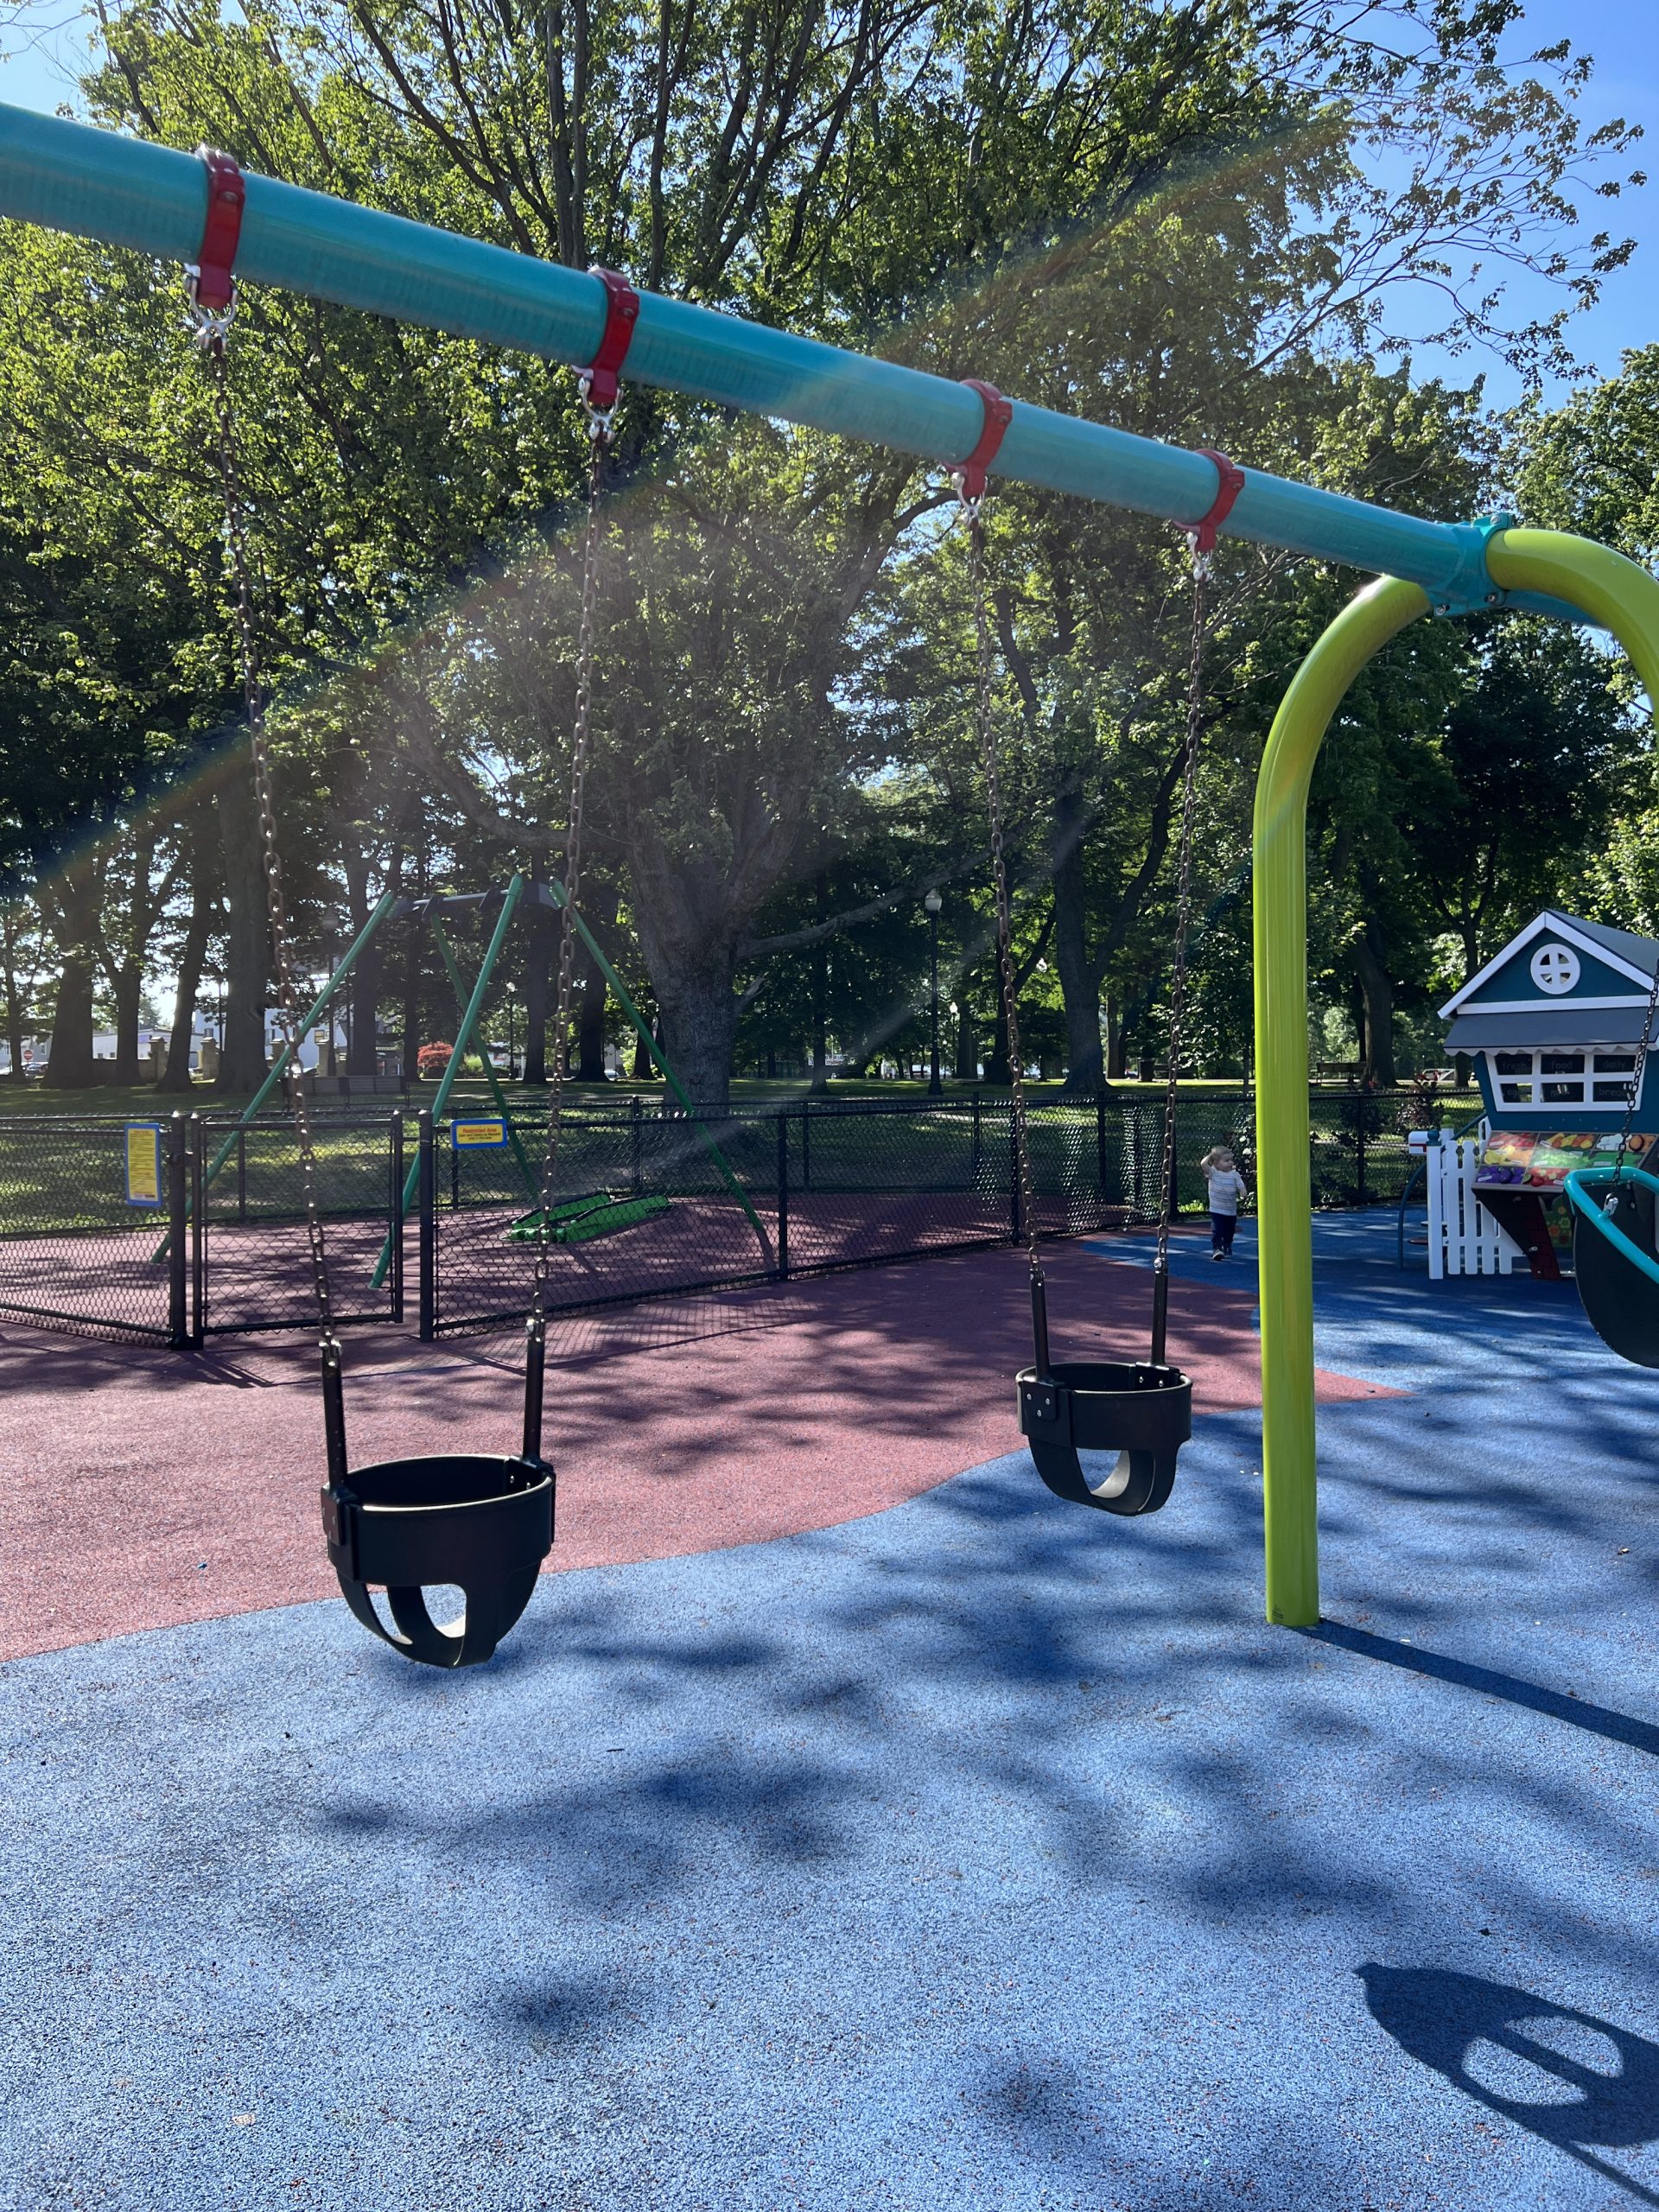 Watsessing Park Playground in Bloomfield NJ 2 baby swings